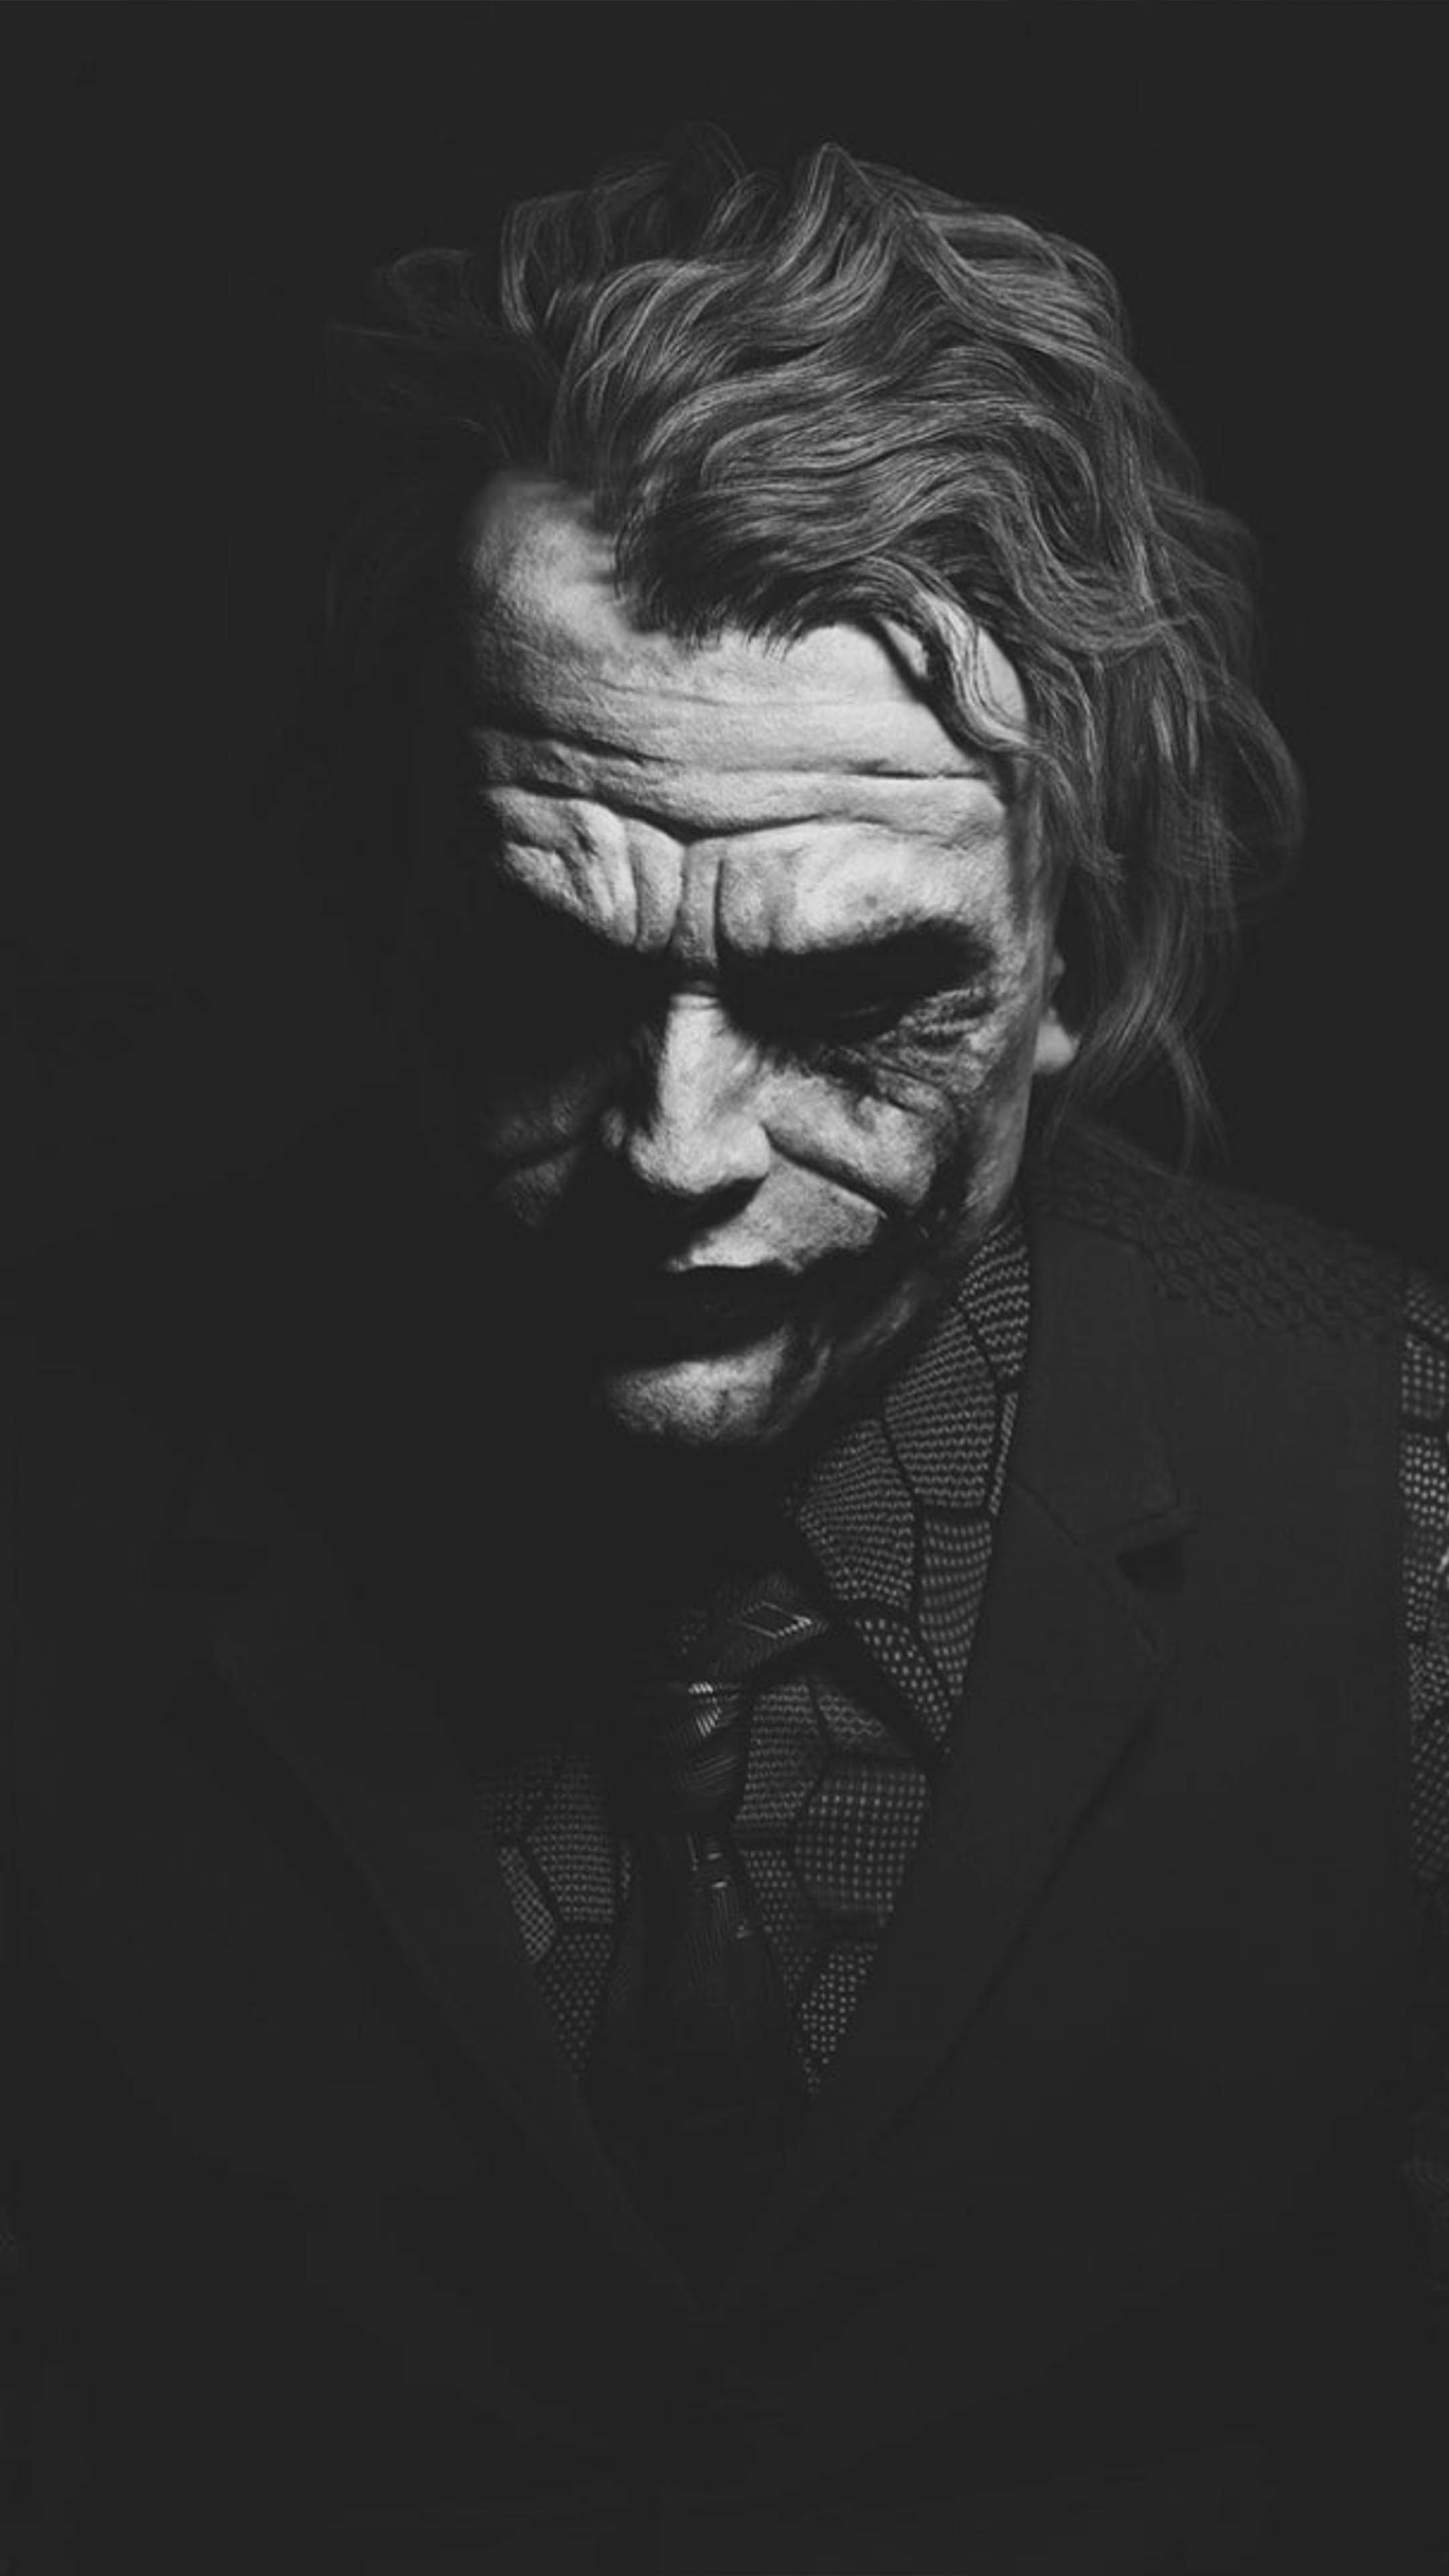 Heath Ledger Joker là một trong những nhân vật phản diện kinh điển và đặc biệt được yêu thích nhất trong lịch sử điện ảnh. Hãy cùng tôi chiêm ngưỡng những hình ảnh của nhân vật này và khám phá sự độc đáo và nghệ thuật trong vai diễn của Heath Ledger.